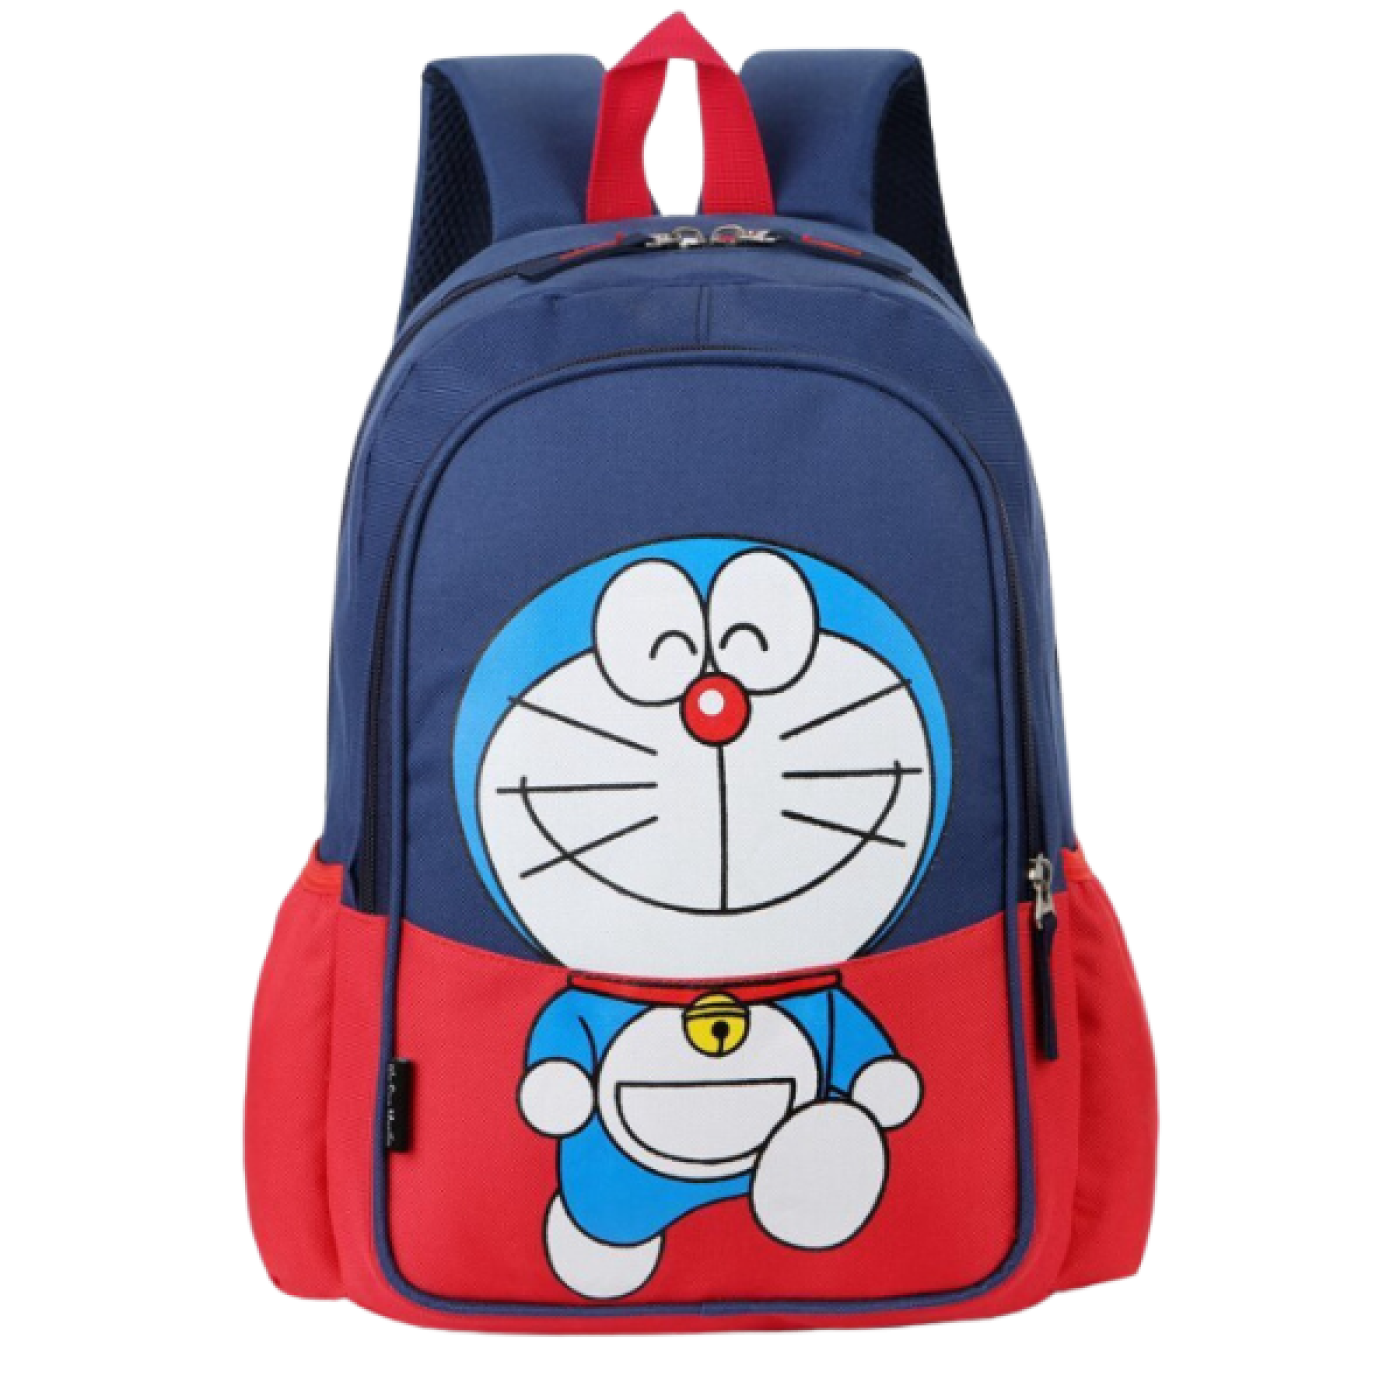 Balo đi học BH Kids in hình Doraemon, Hello Kitty thời trang, xinh xắn cho bé từ 1-10 tuổi,